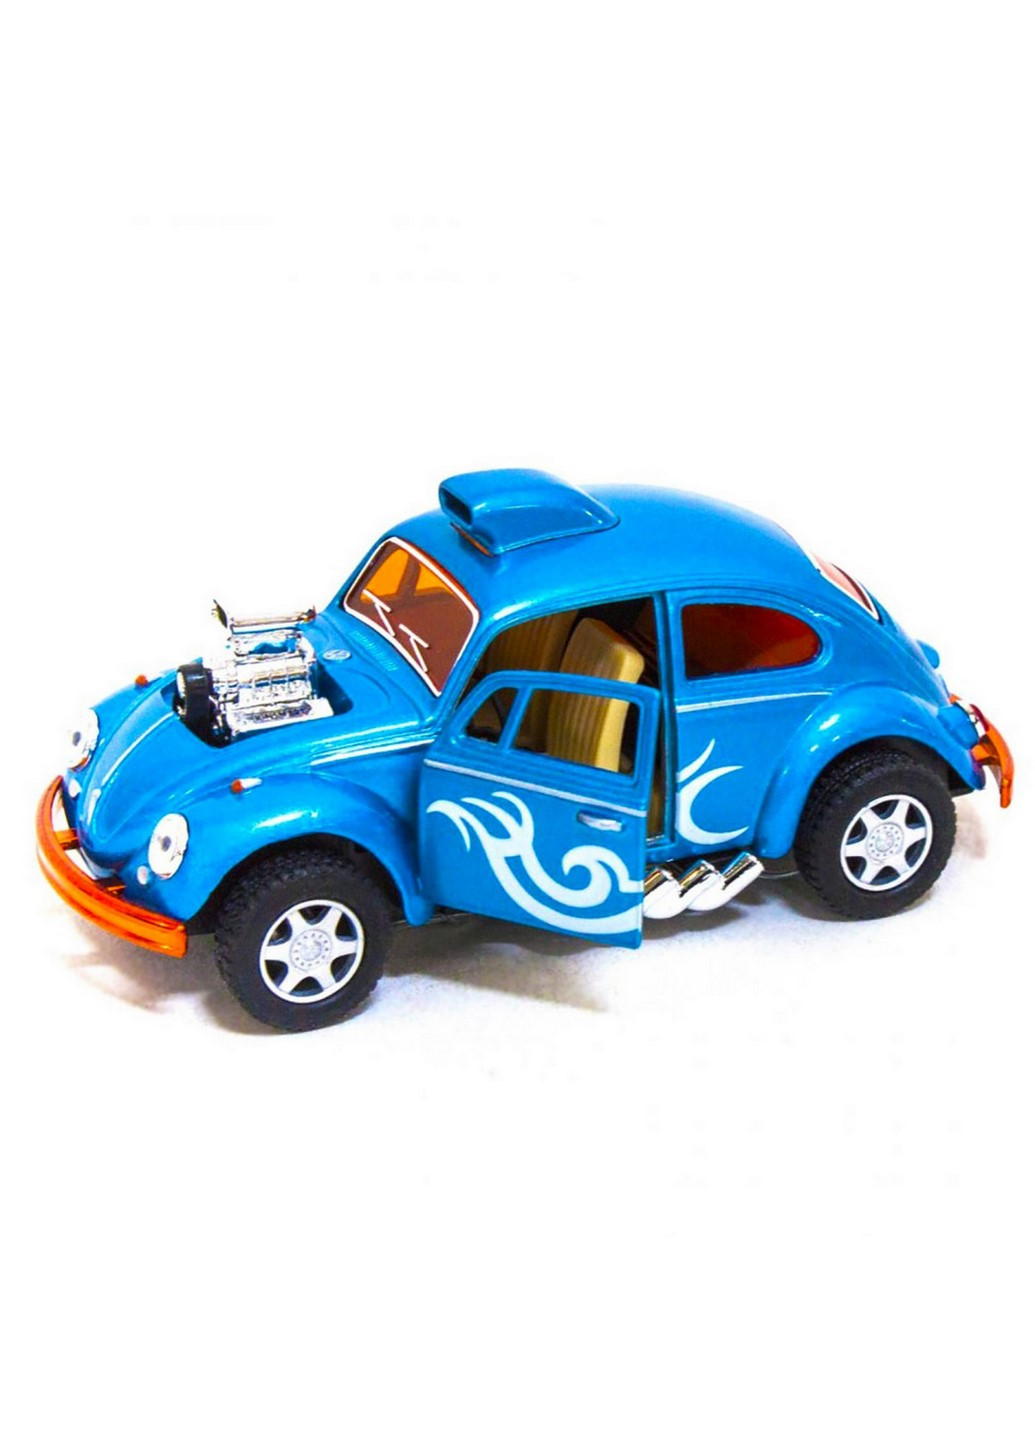 Машинка металлическая Volkswagen Beetle Custom Dragracer KT5405W инерционная 1:32 (Зеленый) Kinsmart (260376905)